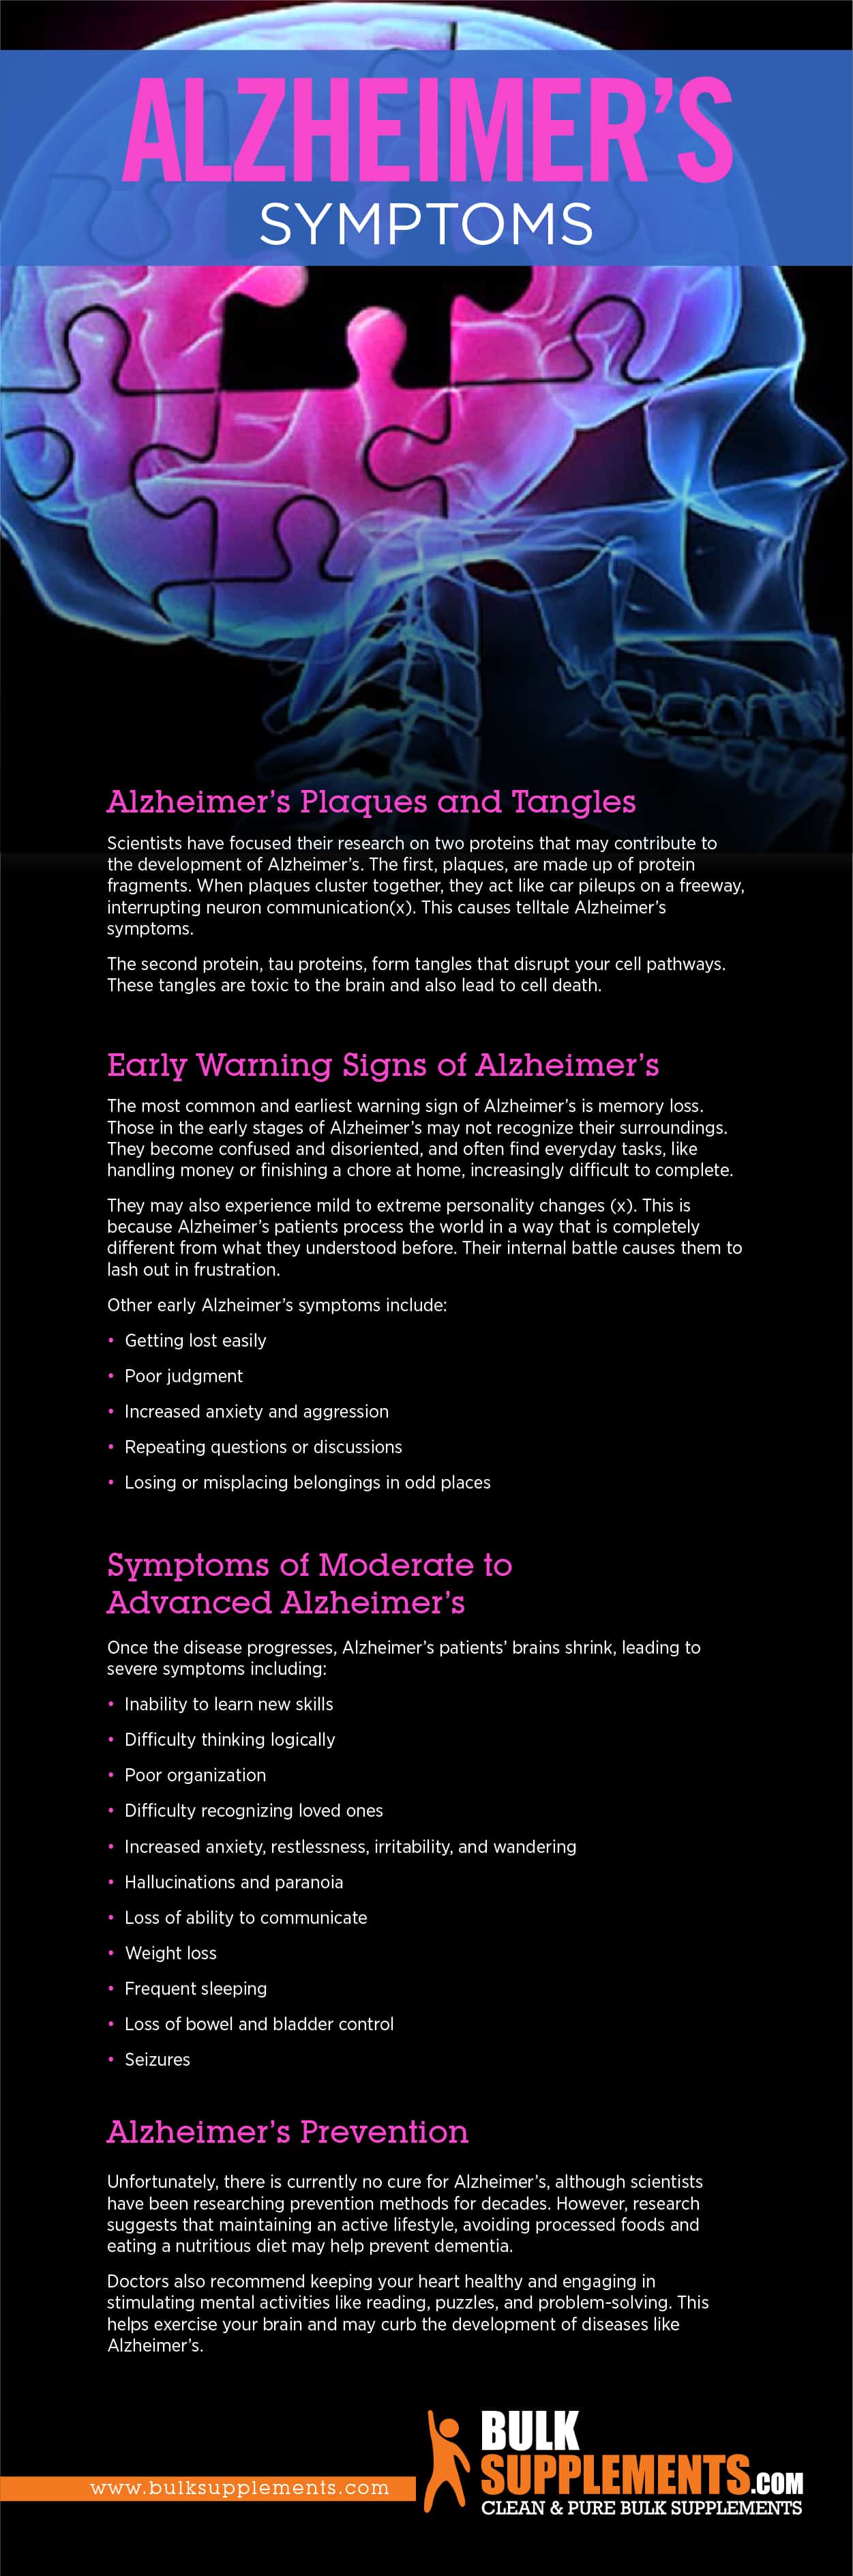 Alzheimer's Symptoms